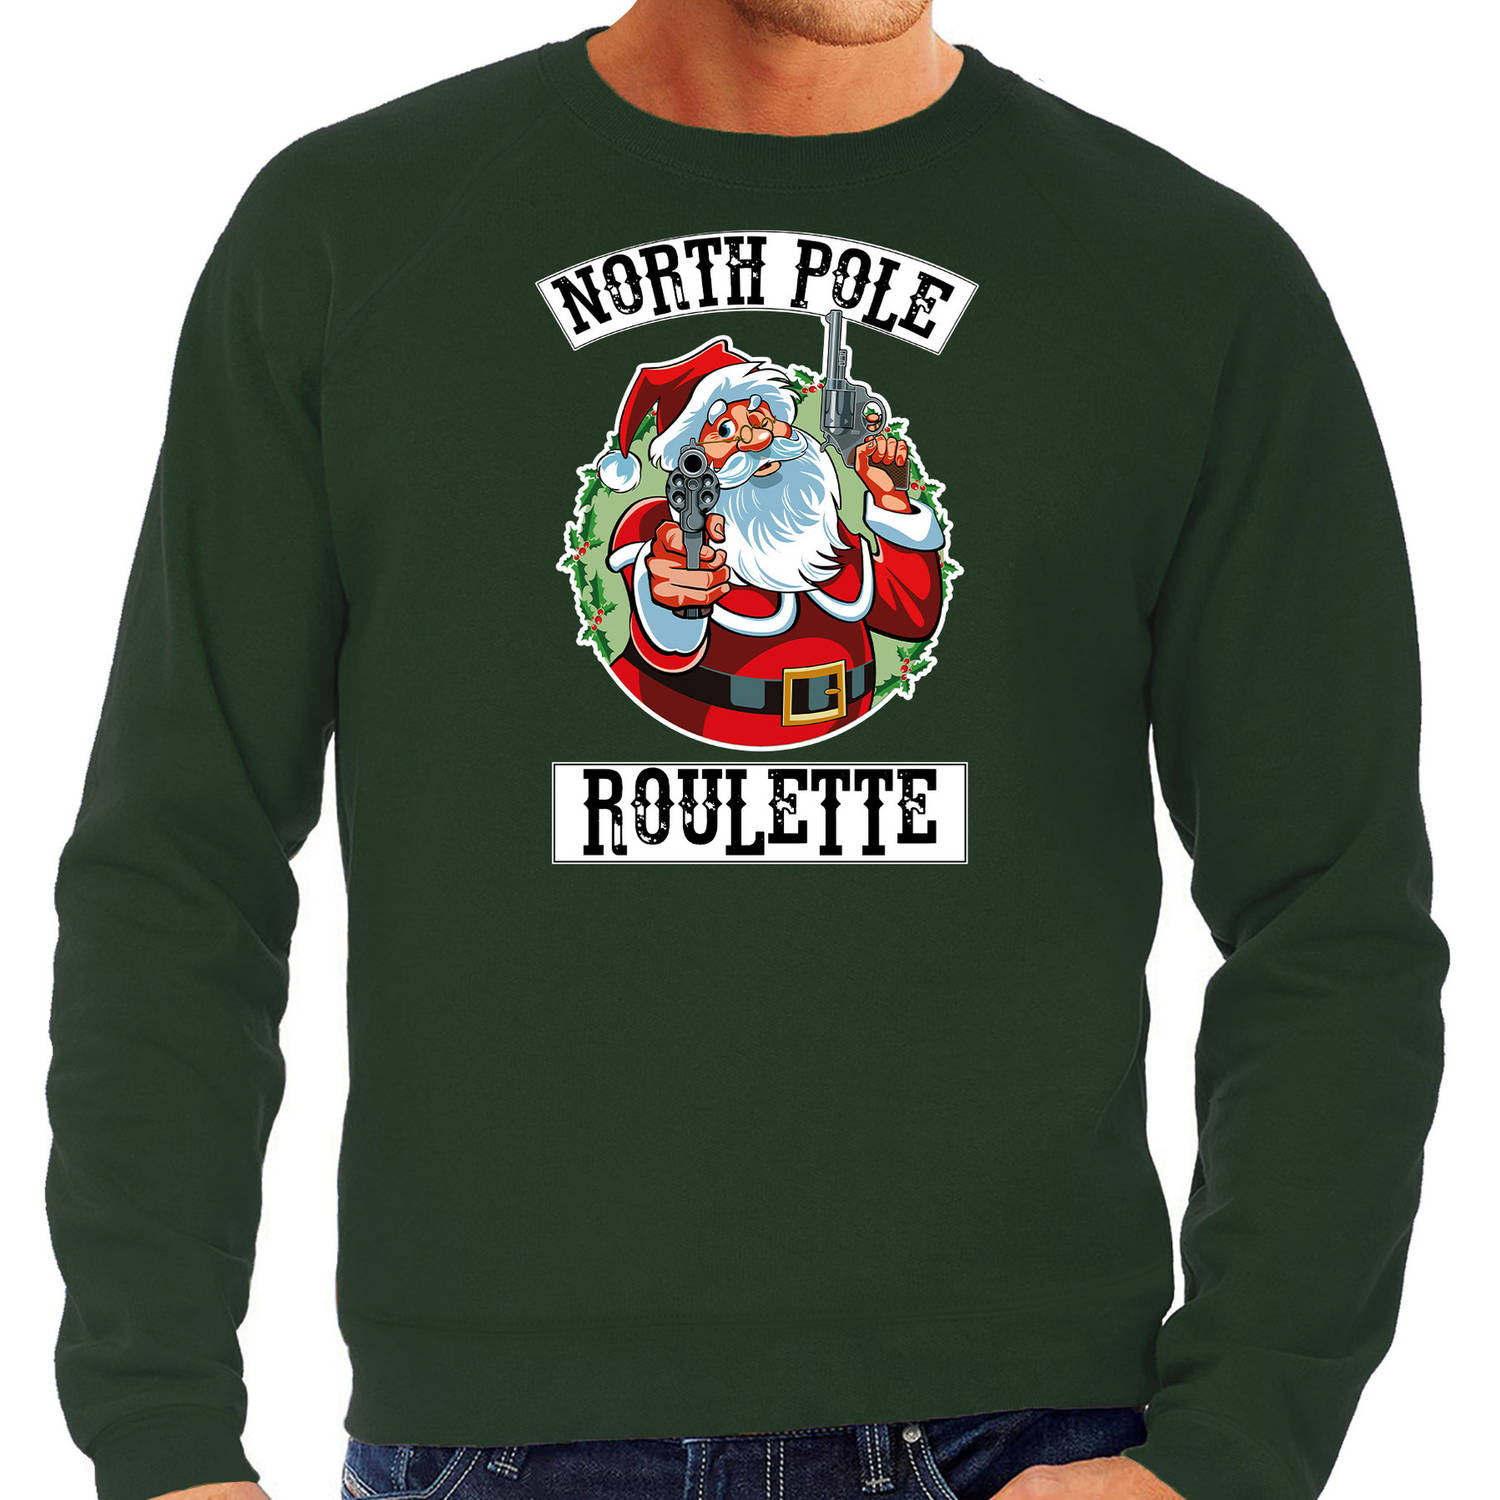 Groene Kersttrui / Kerstkleding Northpole roulette voor heren L - kerst truien